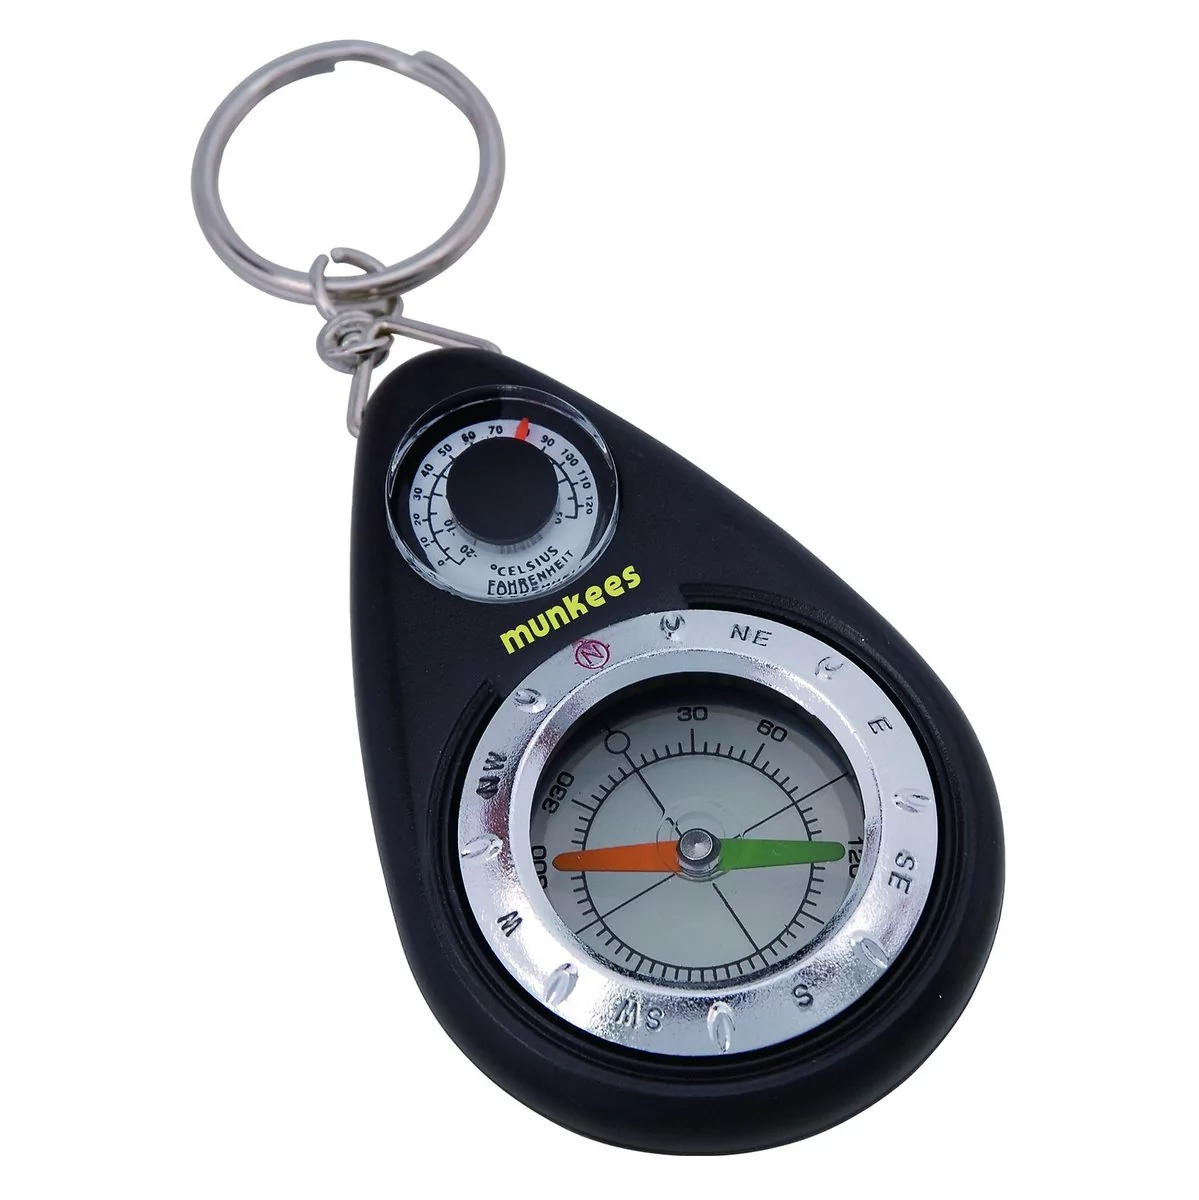 munkees termometr kompas breloczek do kluczy, w rozmiarze uniwersalnym 3154  - Ceny i opinie na Skapiec.pl